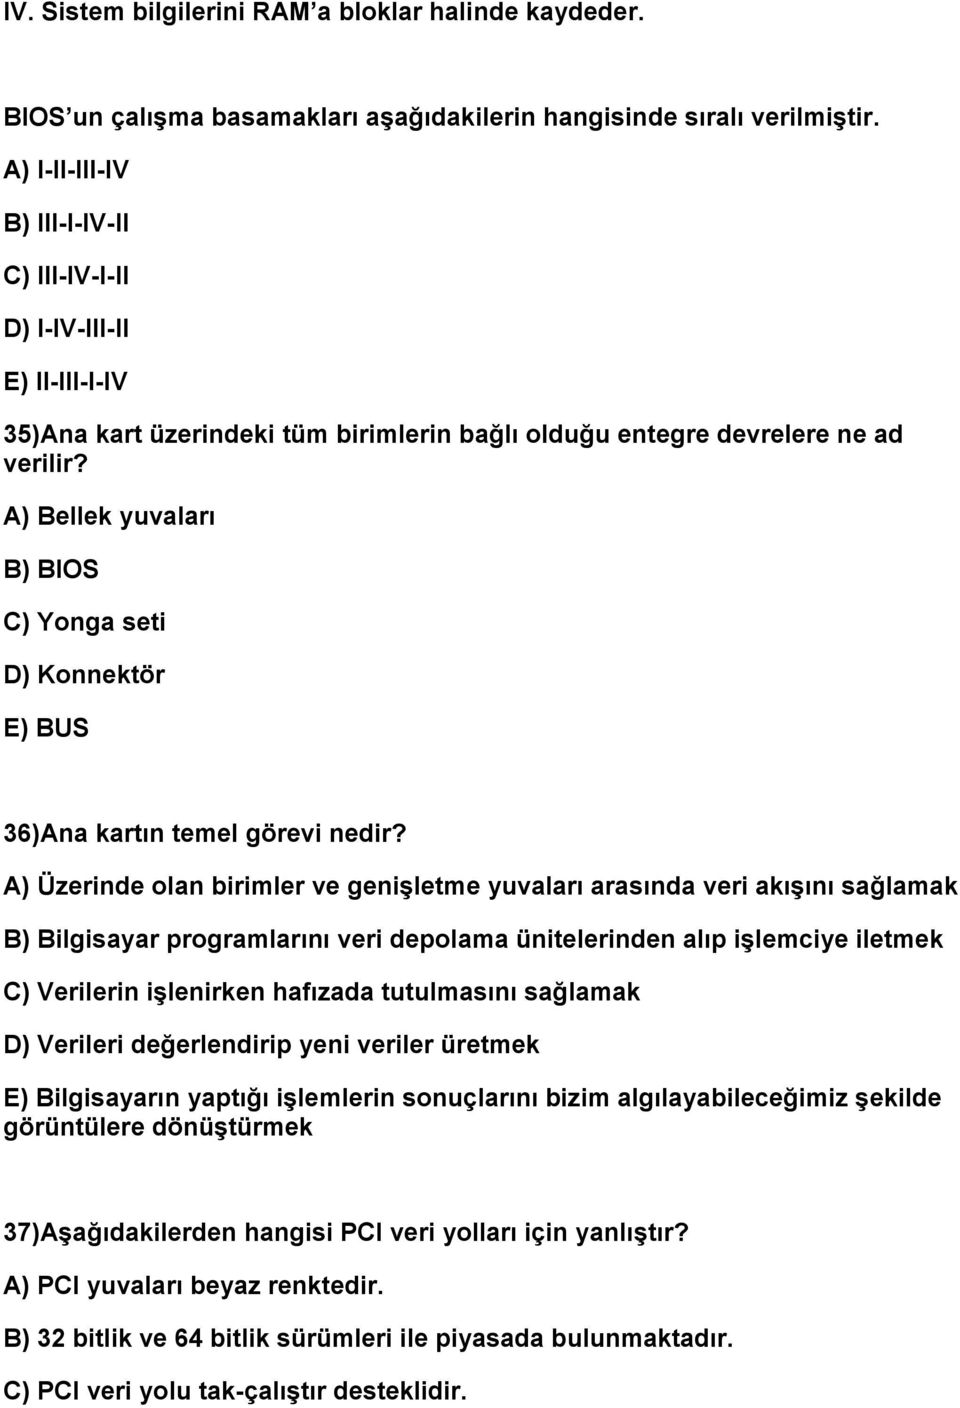 A) Bellek yuvaları B) BIOS C) Yonga seti D) Konnektör E) BUS 36)Ana kartın temel görevi nedir?